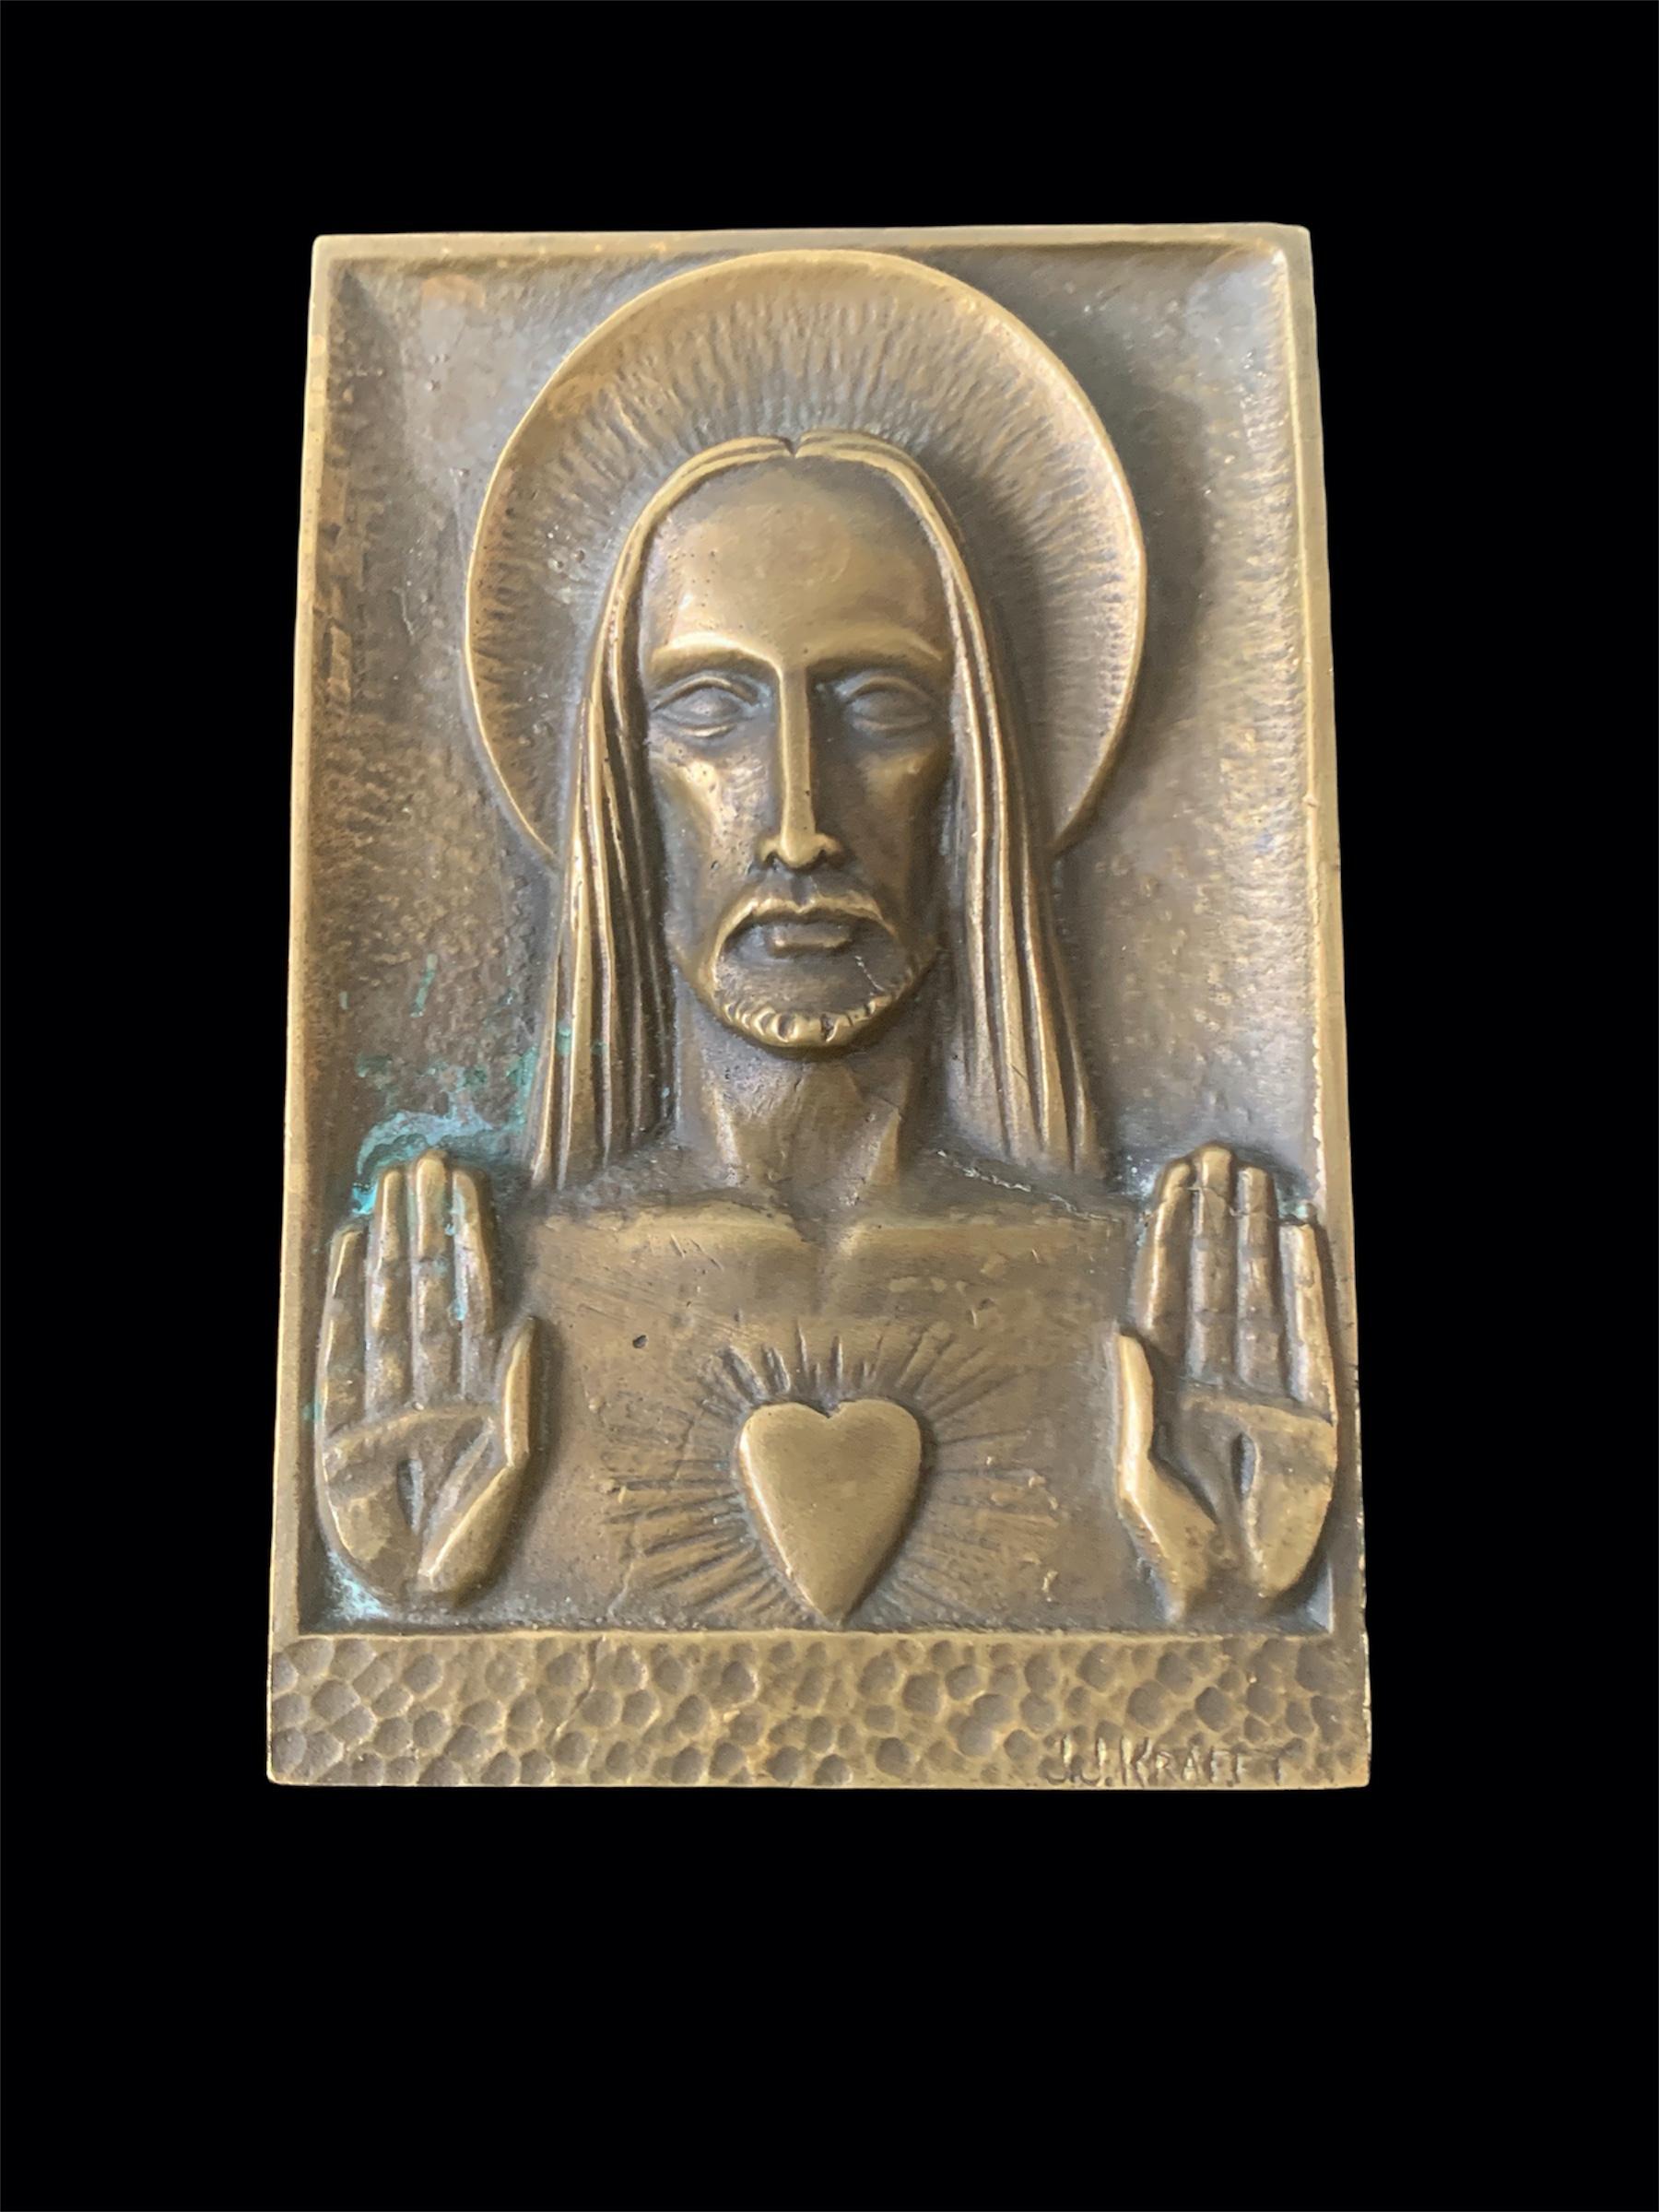 Plaque en bronze d'un designer français
Jeans- jacques Kraftt
représentant Jésus
Signé par l'artiste 
Eloquent
petite pièce d'art en bronze à exposer sur un mur.